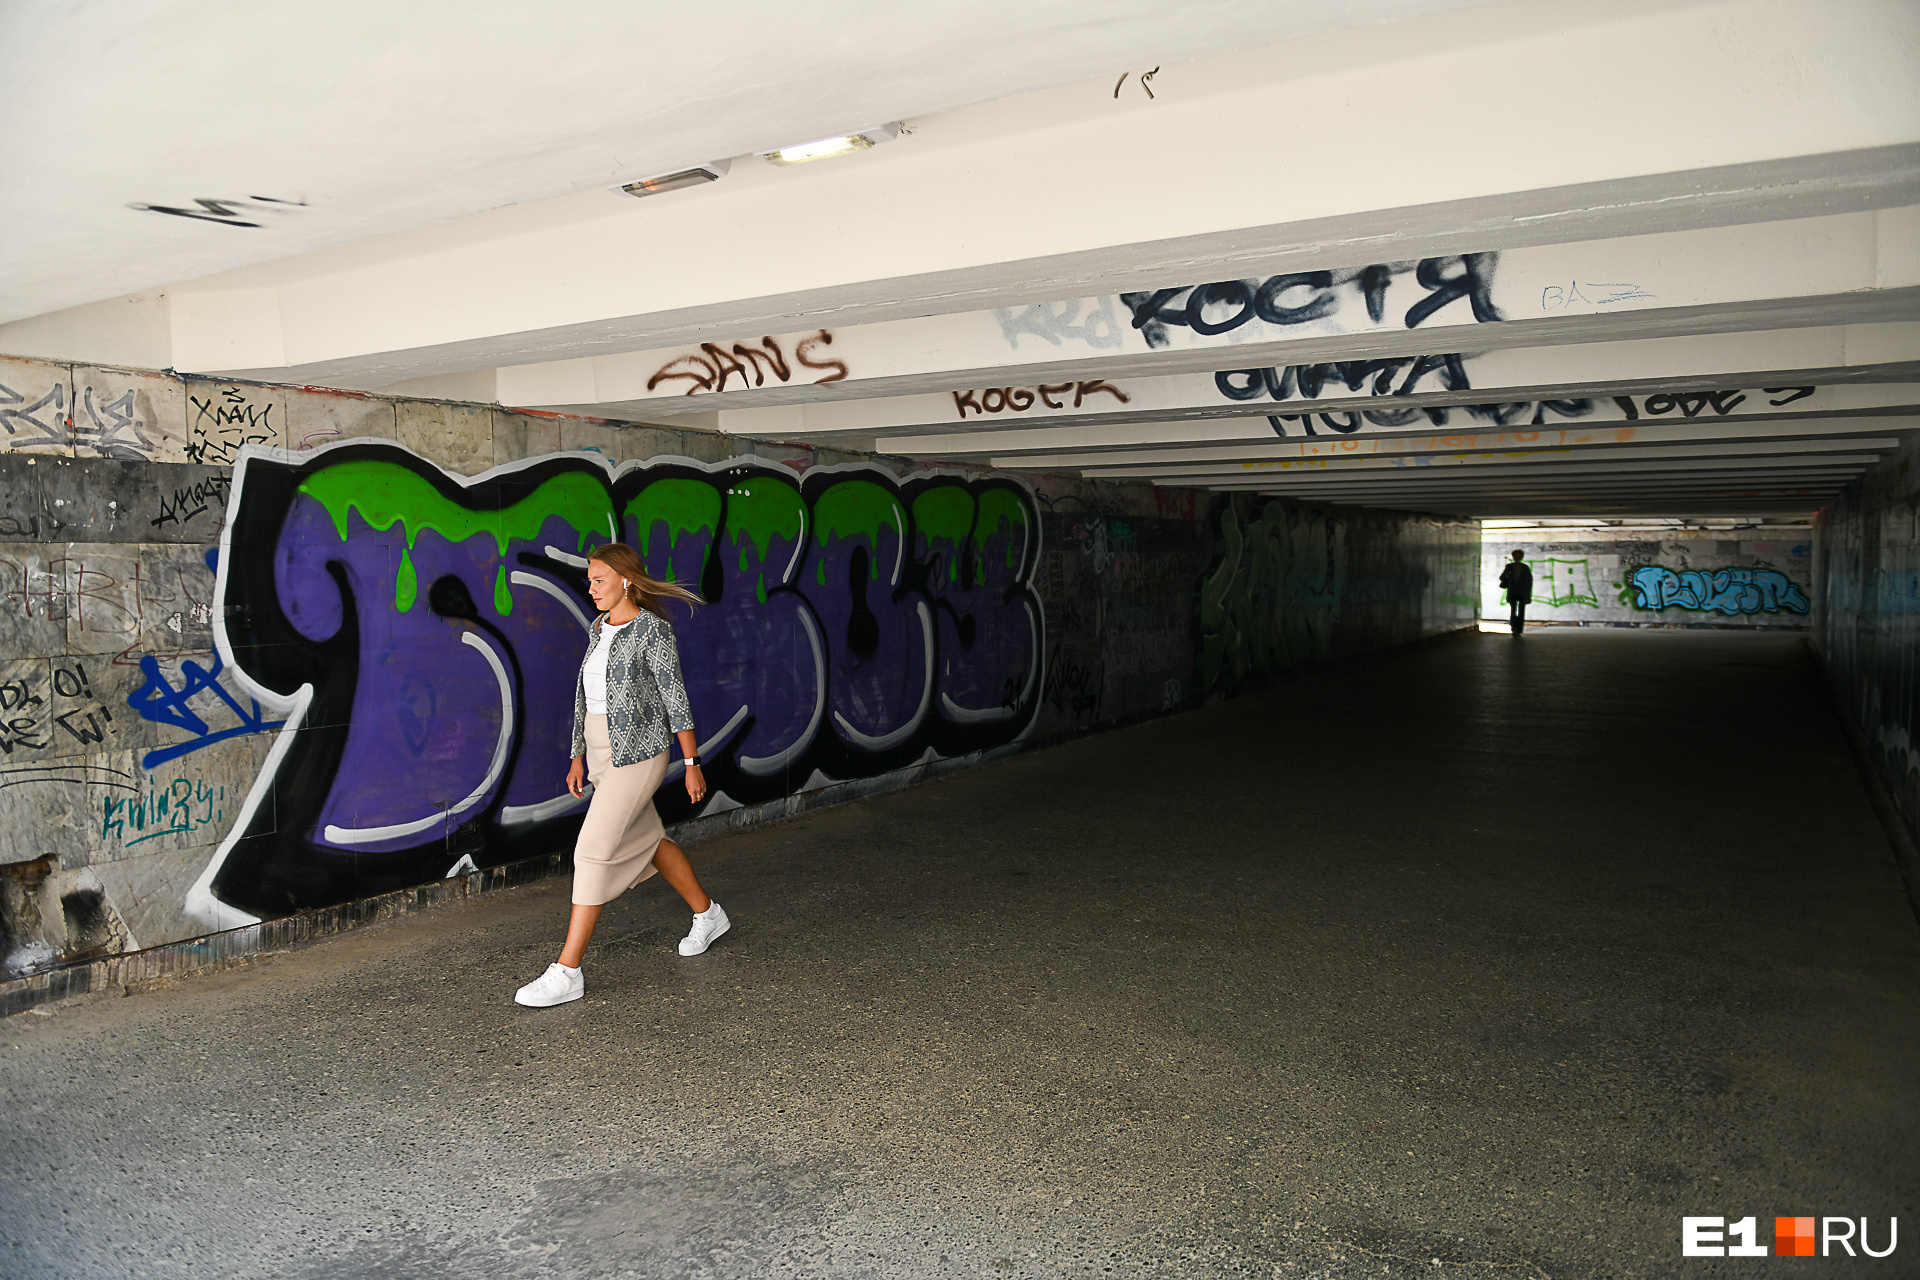 Безвкусные граффити-теги повсюду